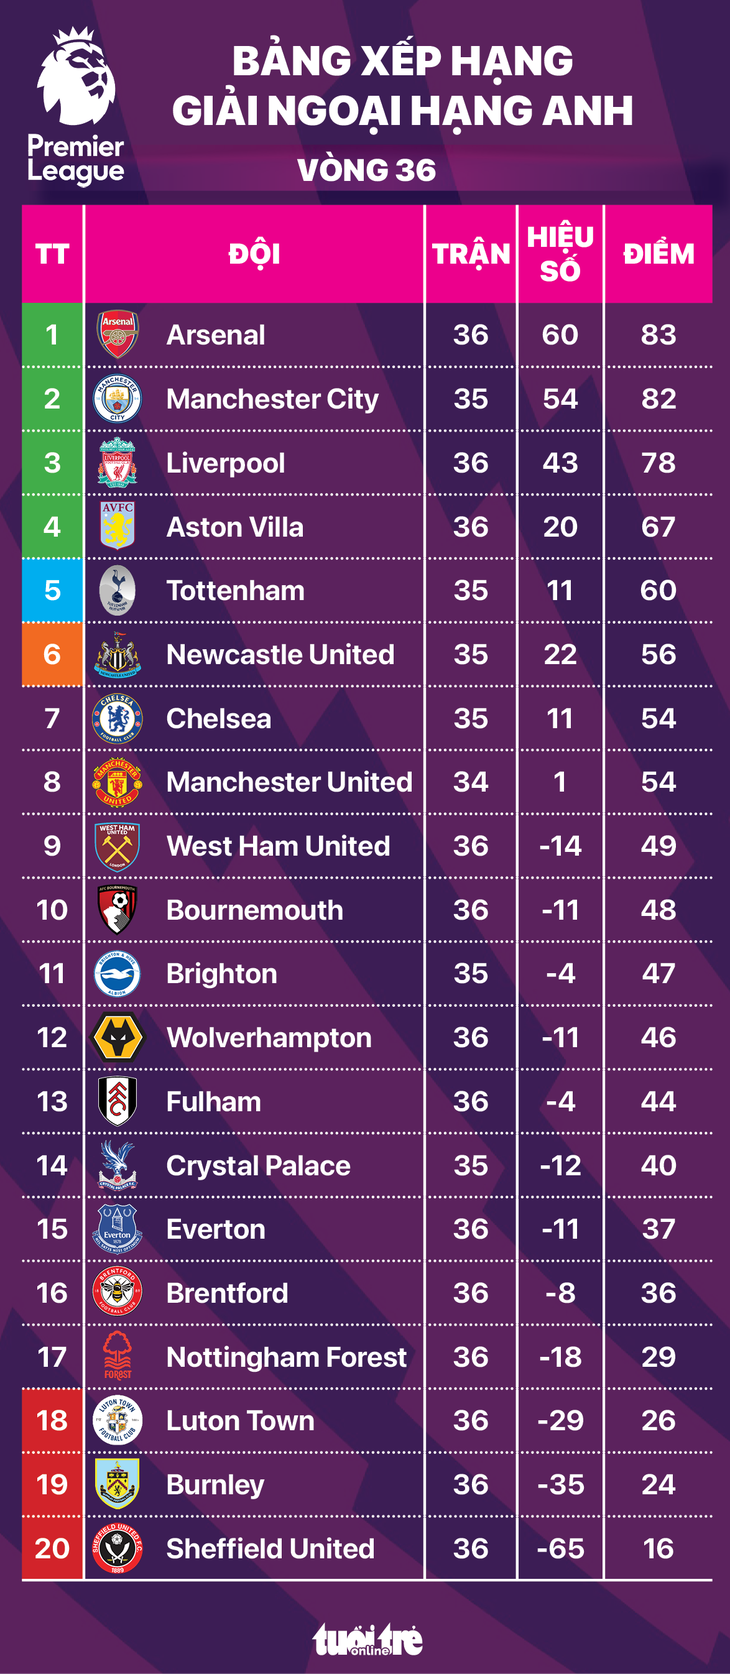 Bảng xếp hạng Ngoại hạng Anh: Arsenal đầu bảng nhưng lợi thế thuộc về Man City